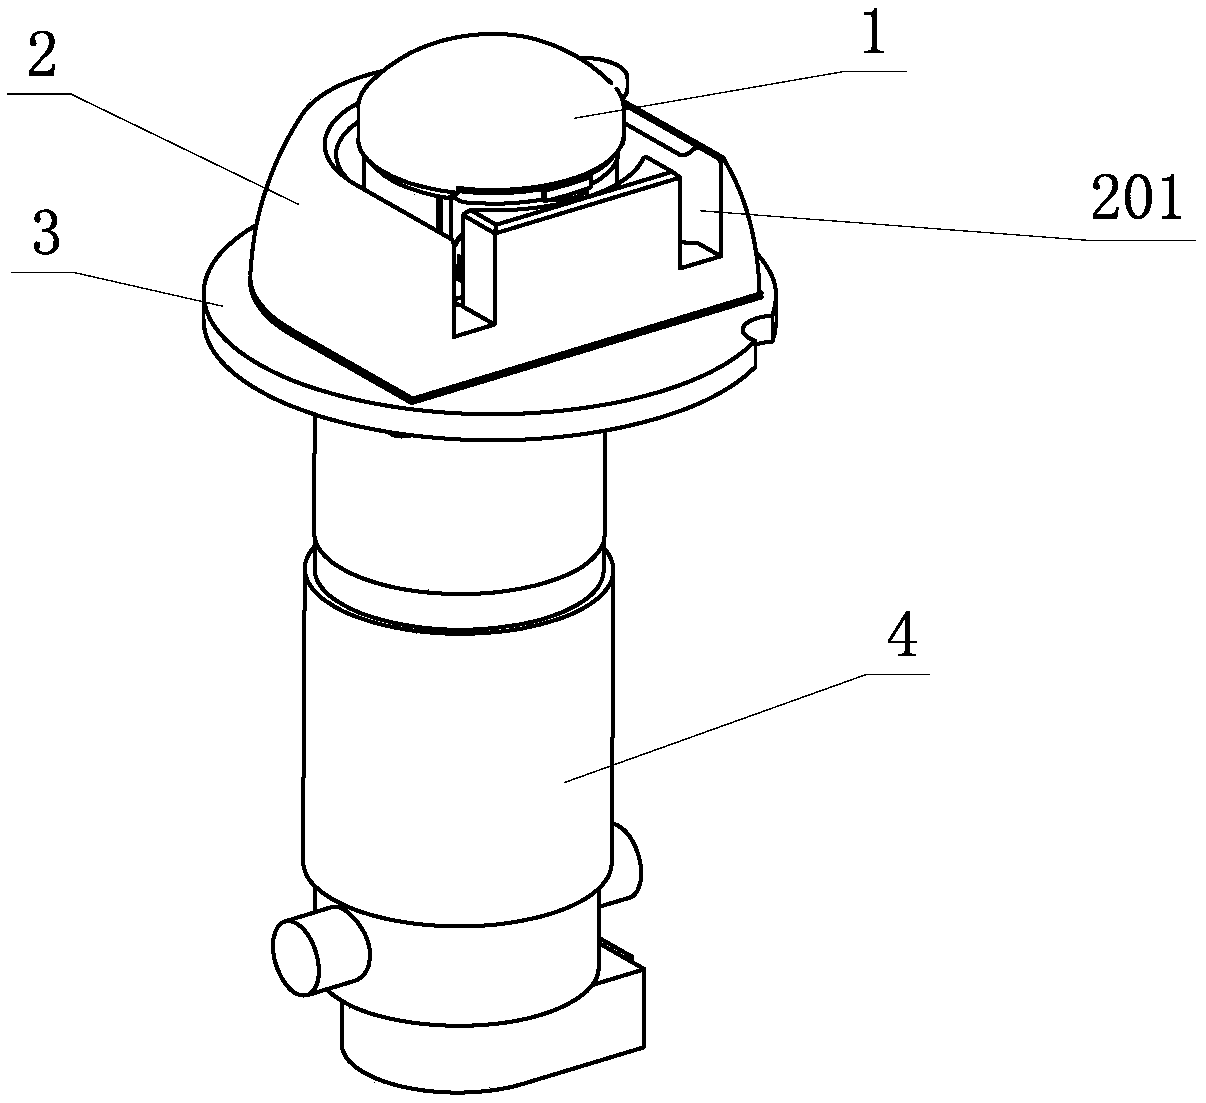 A non-contact circulating pump